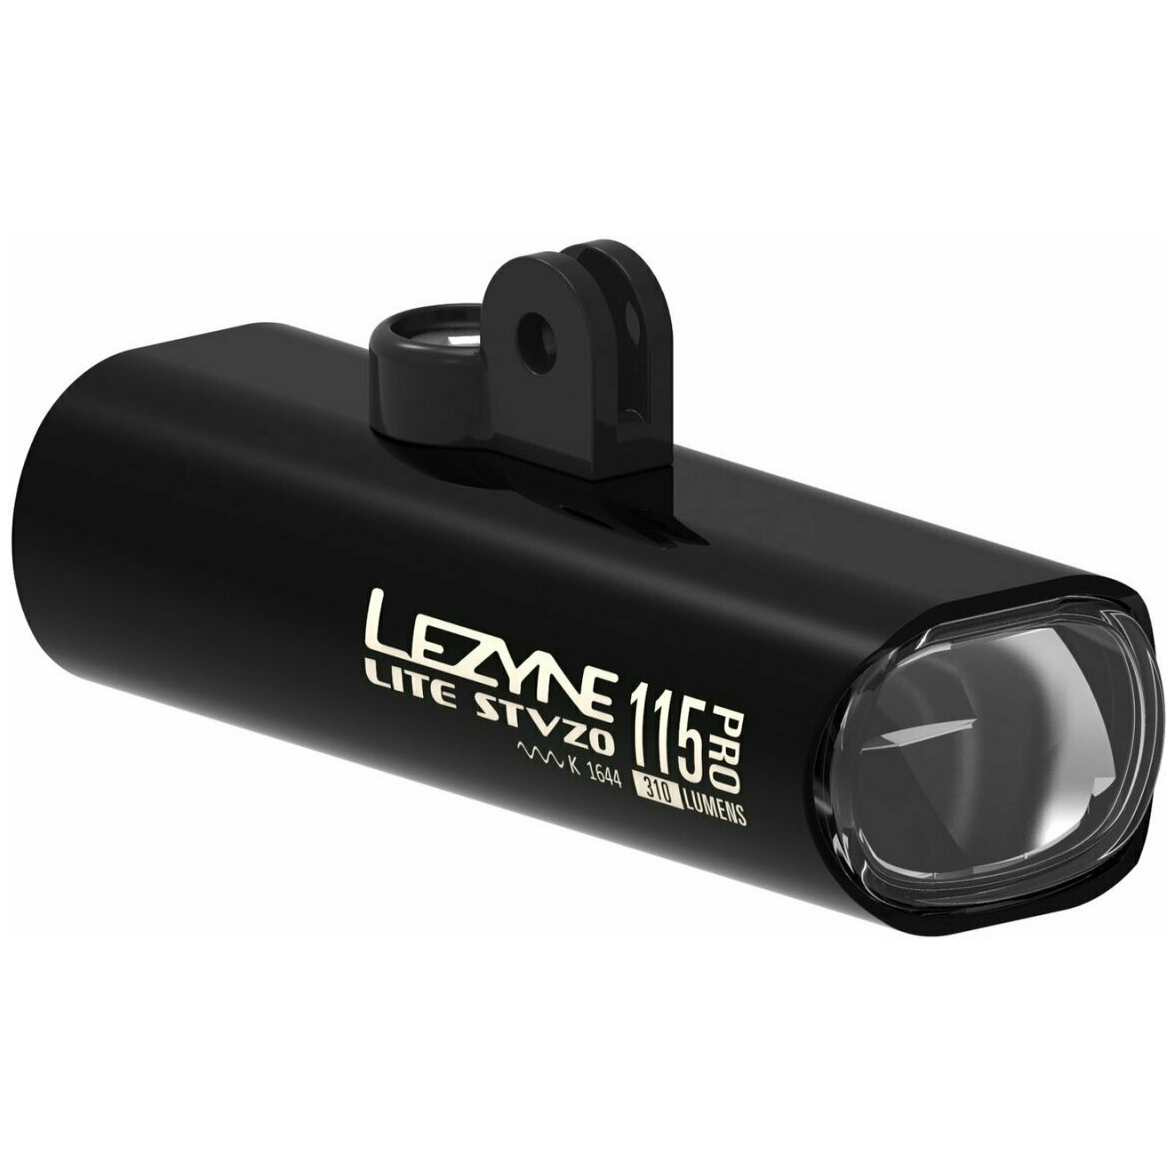 Produktbild von Lezyne Lite Drive Pro 115 Reverse Frontlicht - StVZO zugelassen - schwarz